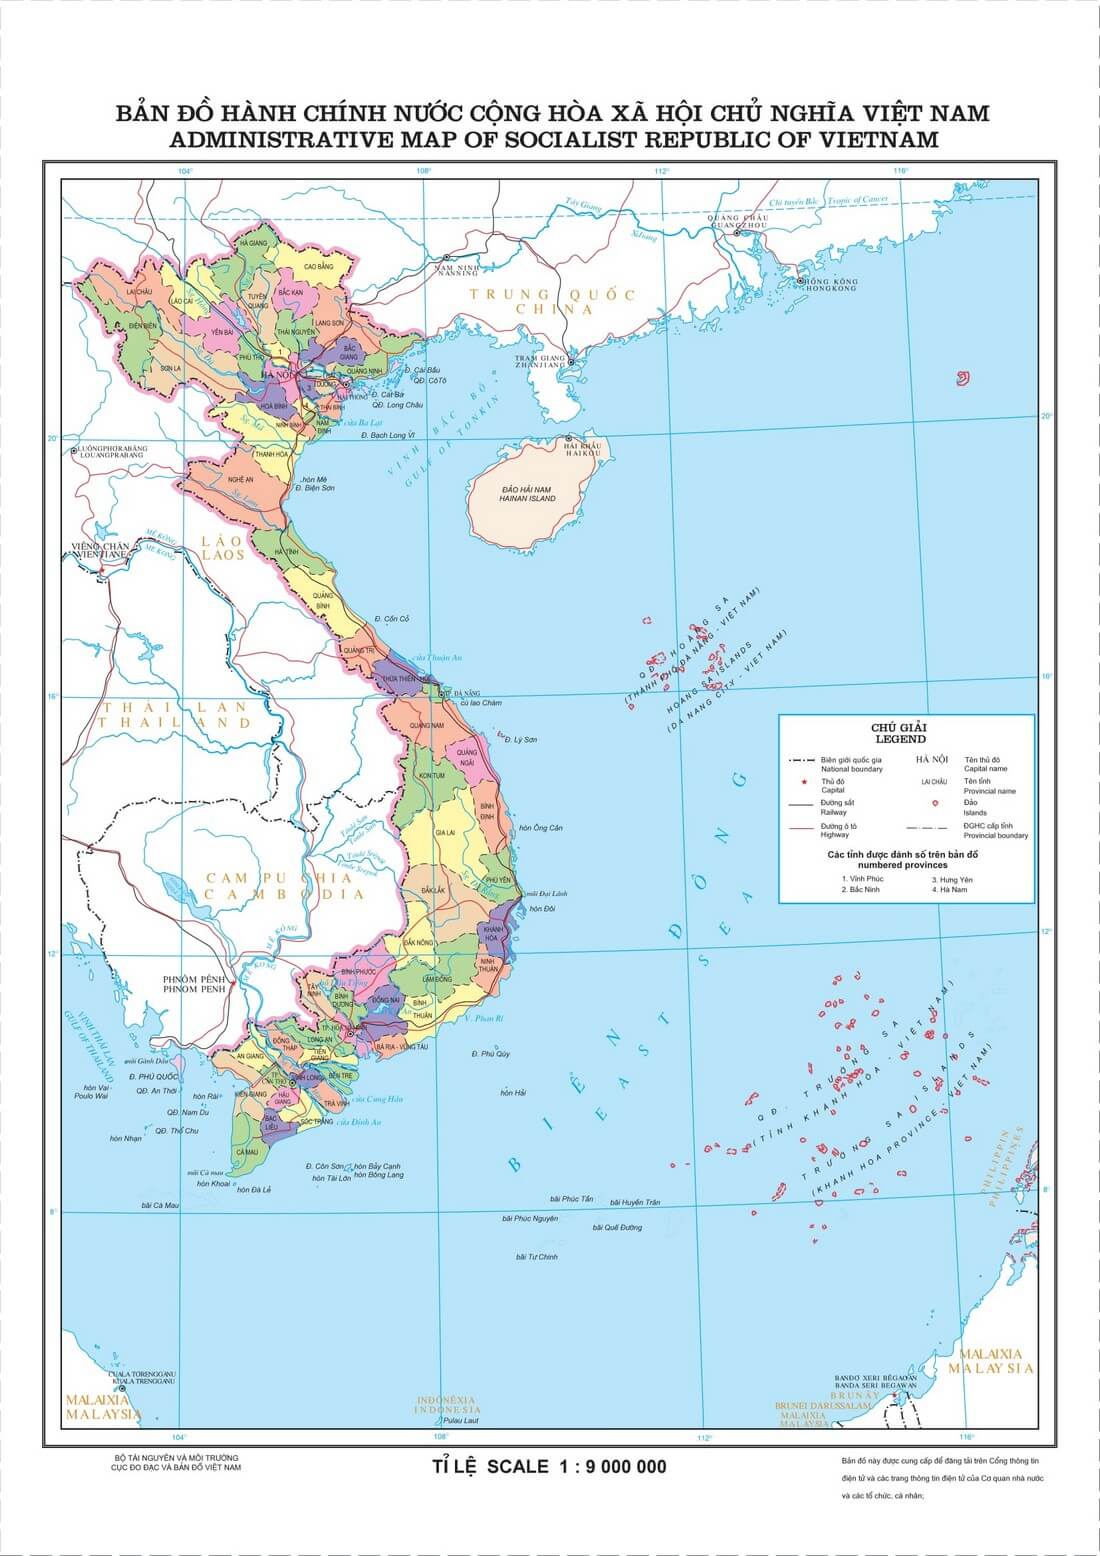 Bản đồ hành chính 63 tỉnh thành Việt Nam (cập nhật 2022): Với cập nhật mới nhất vào năm 2022, bản đồ hành chính Việt Nam đã cung cấp cho bạn những thông tin mới nhất về các tỉnh thành và các khu vực tương ứng. Với các thông tin chi tiết và dễ hiểu, bạn sẽ tìm thấy tất cả những gì cần có trên bản đồ nhanh chóng và dễ dàng.